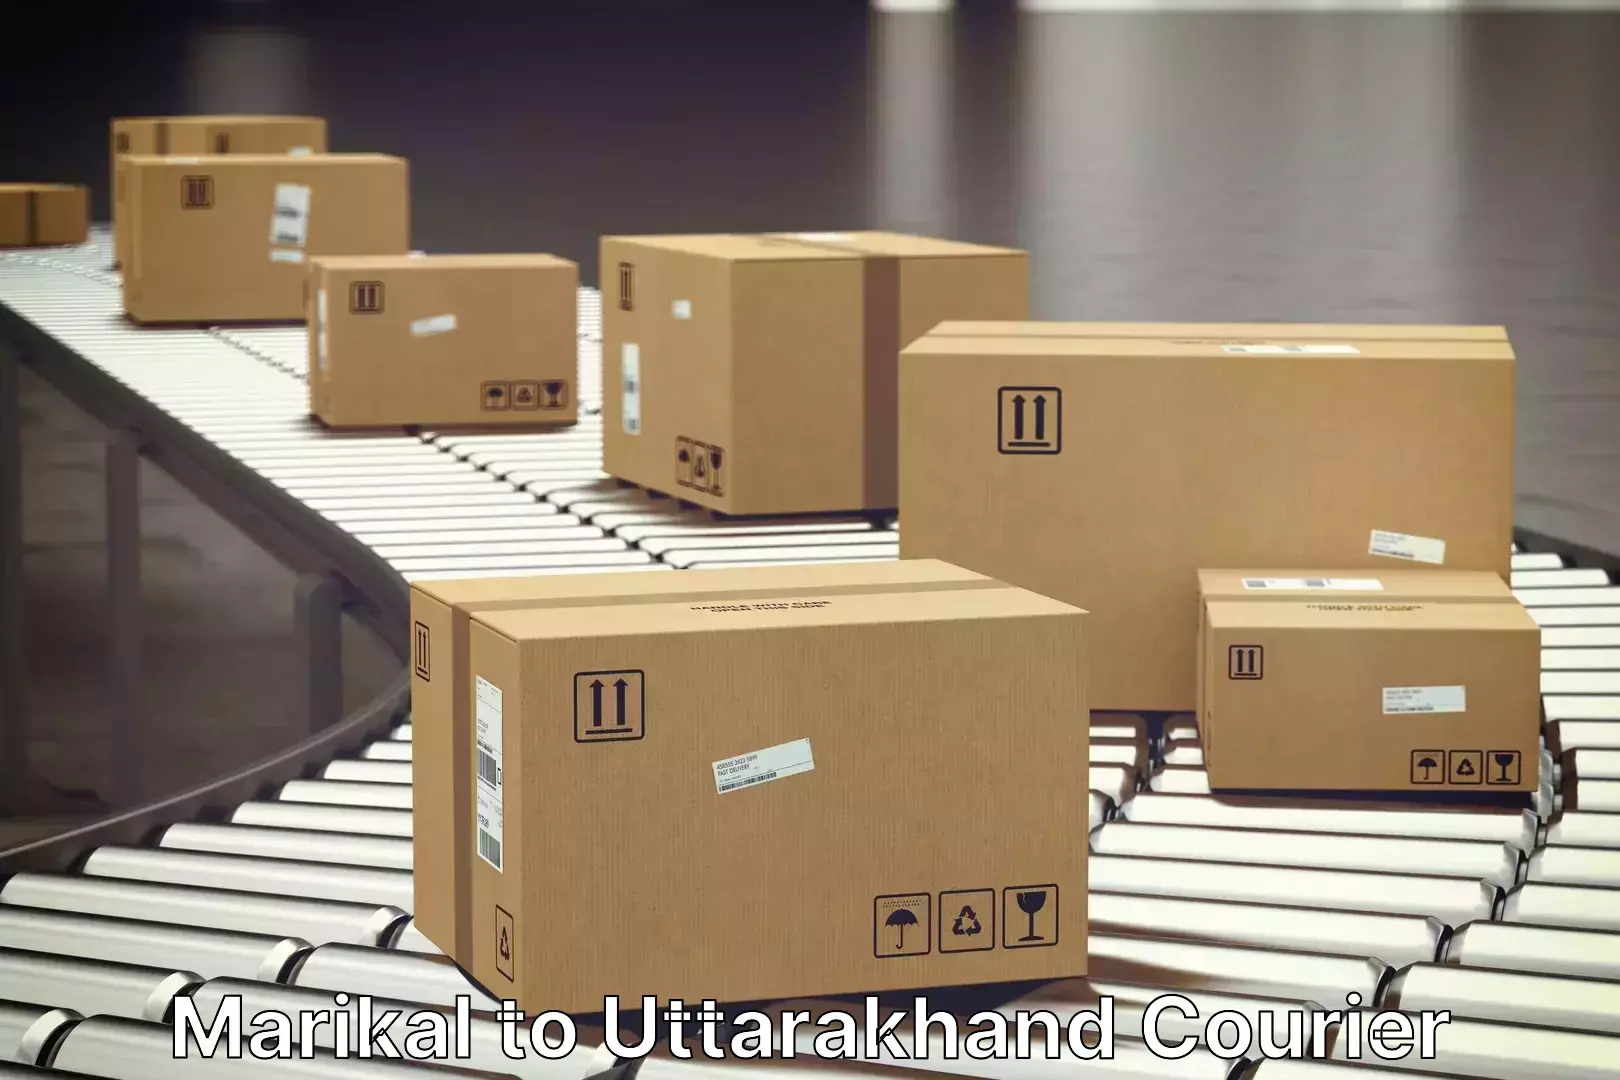 Furniture moving experts Marikal to Uttarakhand